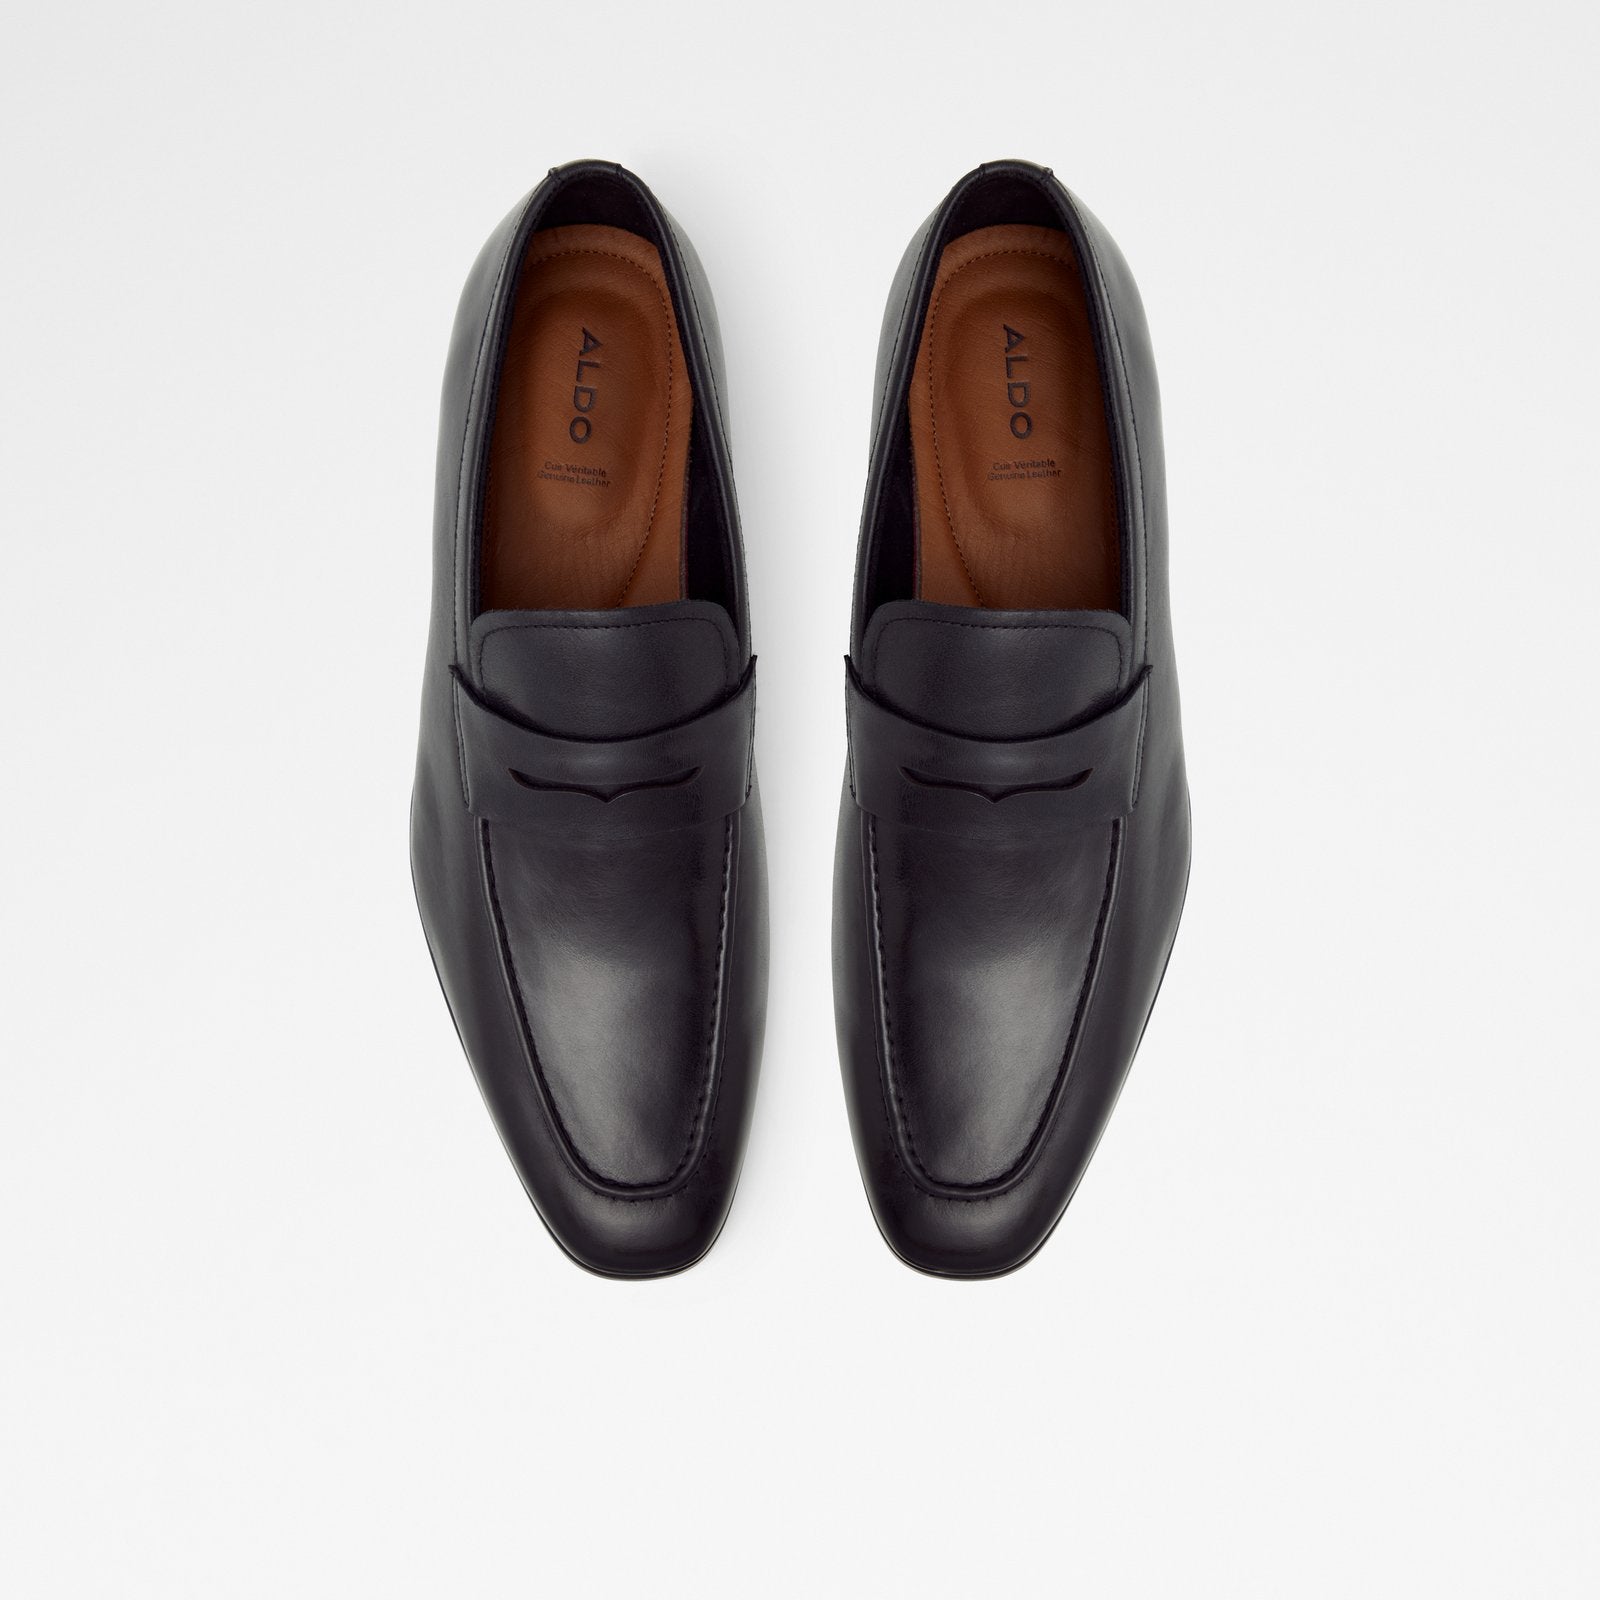 Kooperflex Men Shoes - Black - ALDO KSA